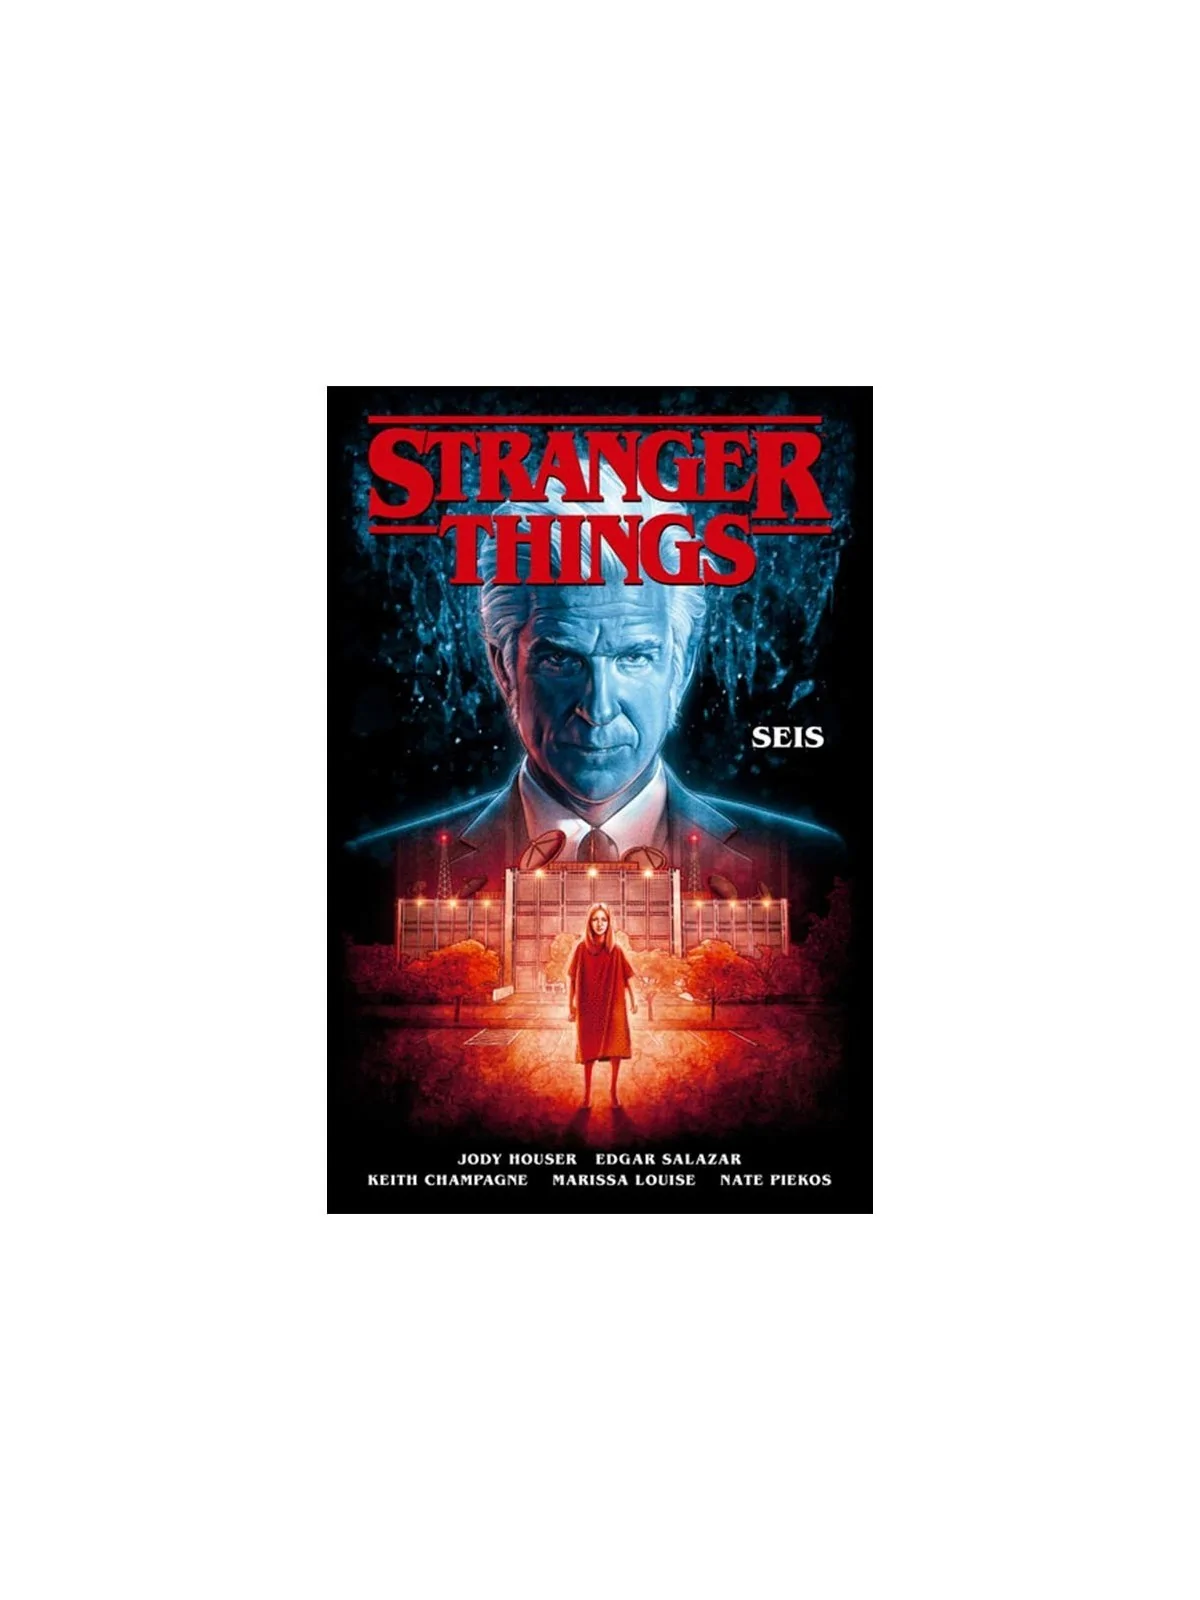 Comprar Stranger Things 2. Seis barato al mejor precio 16,63 € de Norm